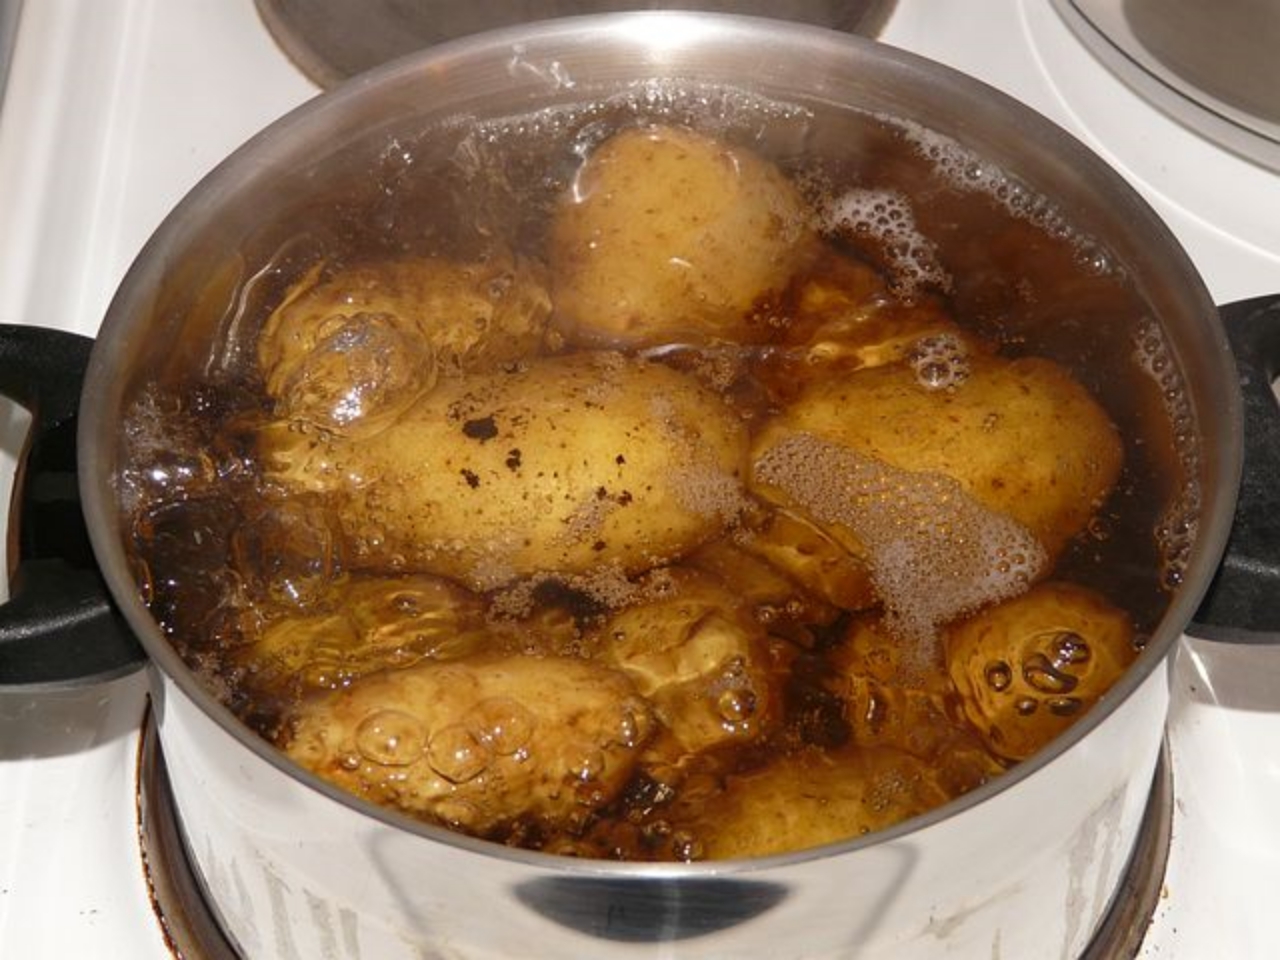 patate in acqua calda